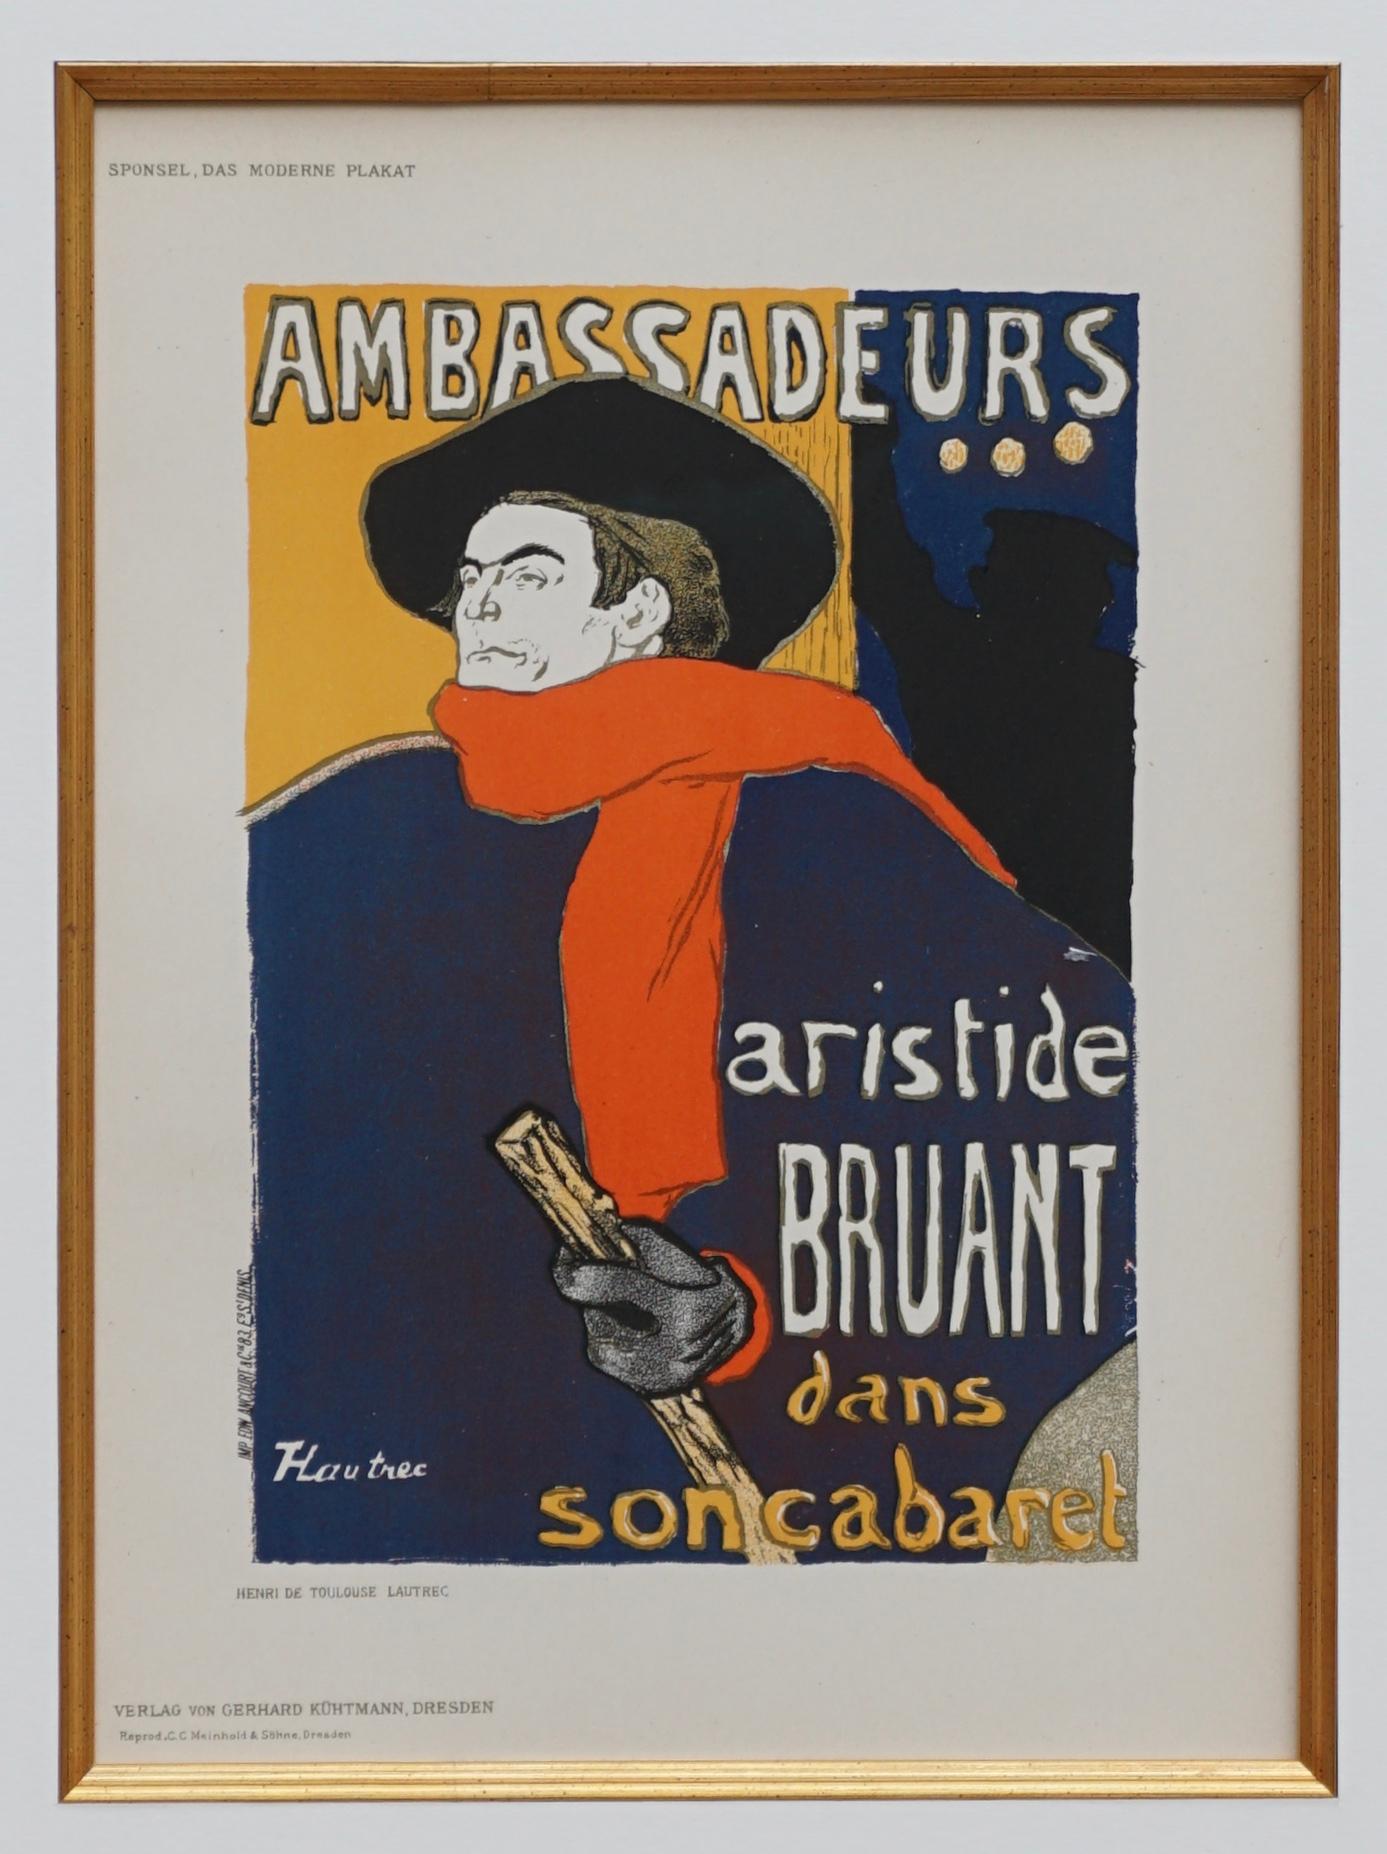 aristide bruant original poster